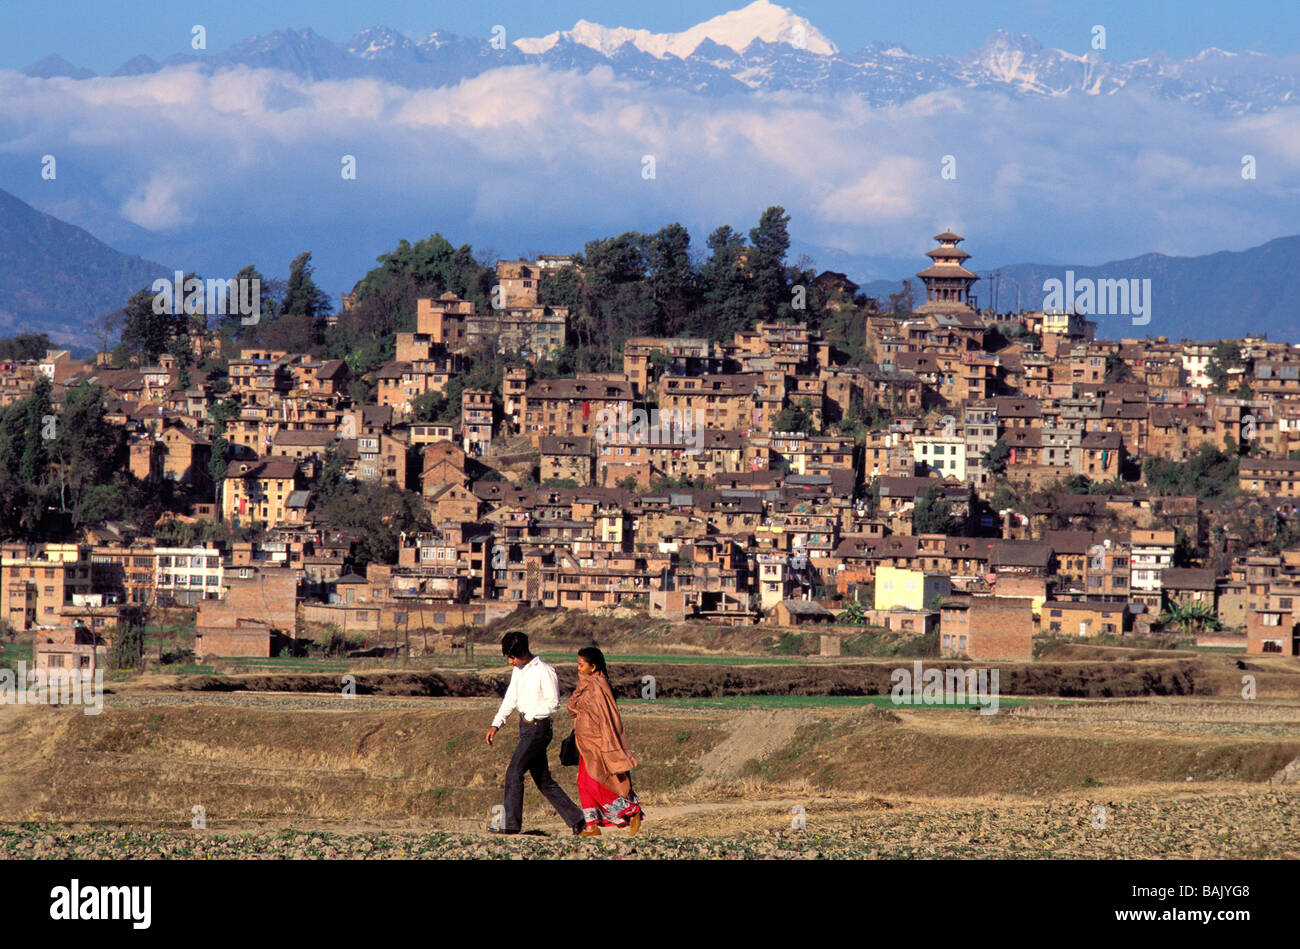 La vallée de Katmandou, Népal, Zone Bagmati, district de Katmandou, Kirtipur, couple, Himalaya et Gosaikund monter à l'arrière-plan Banque D'Images